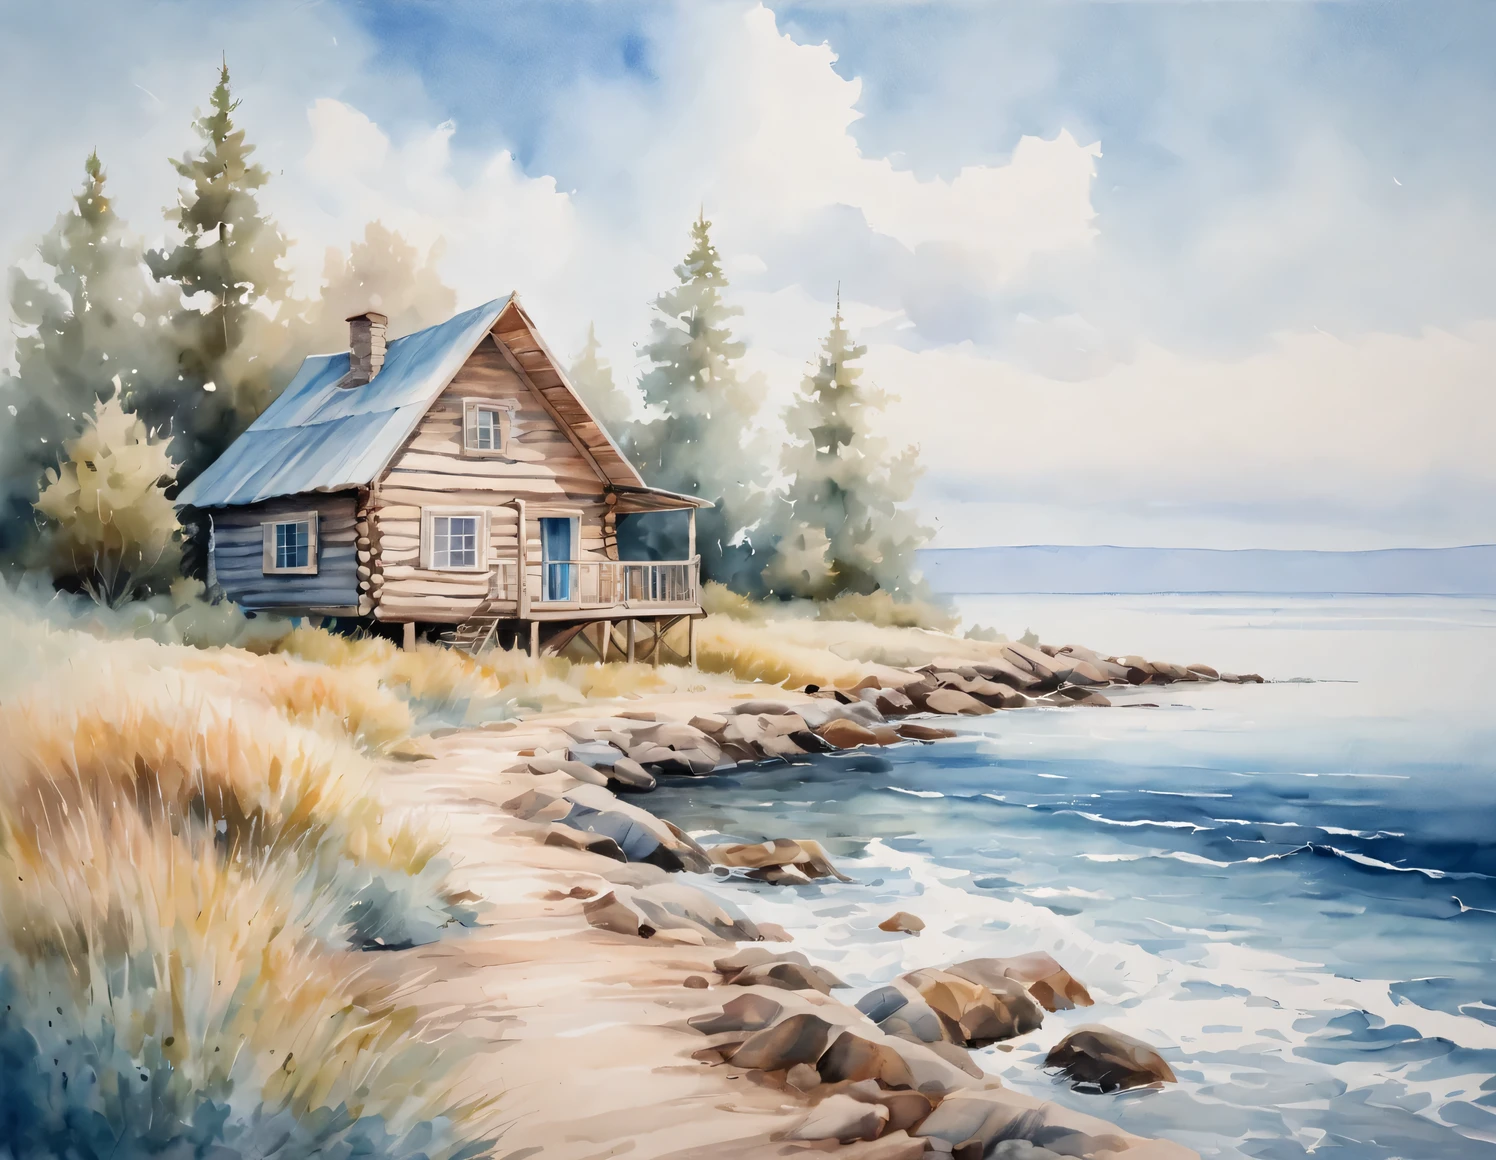 油絵, watercolor painting in 柔らかい色調, 海沿いの丸太小屋, 青空, 柔らかい色調, キャンバスに油絵